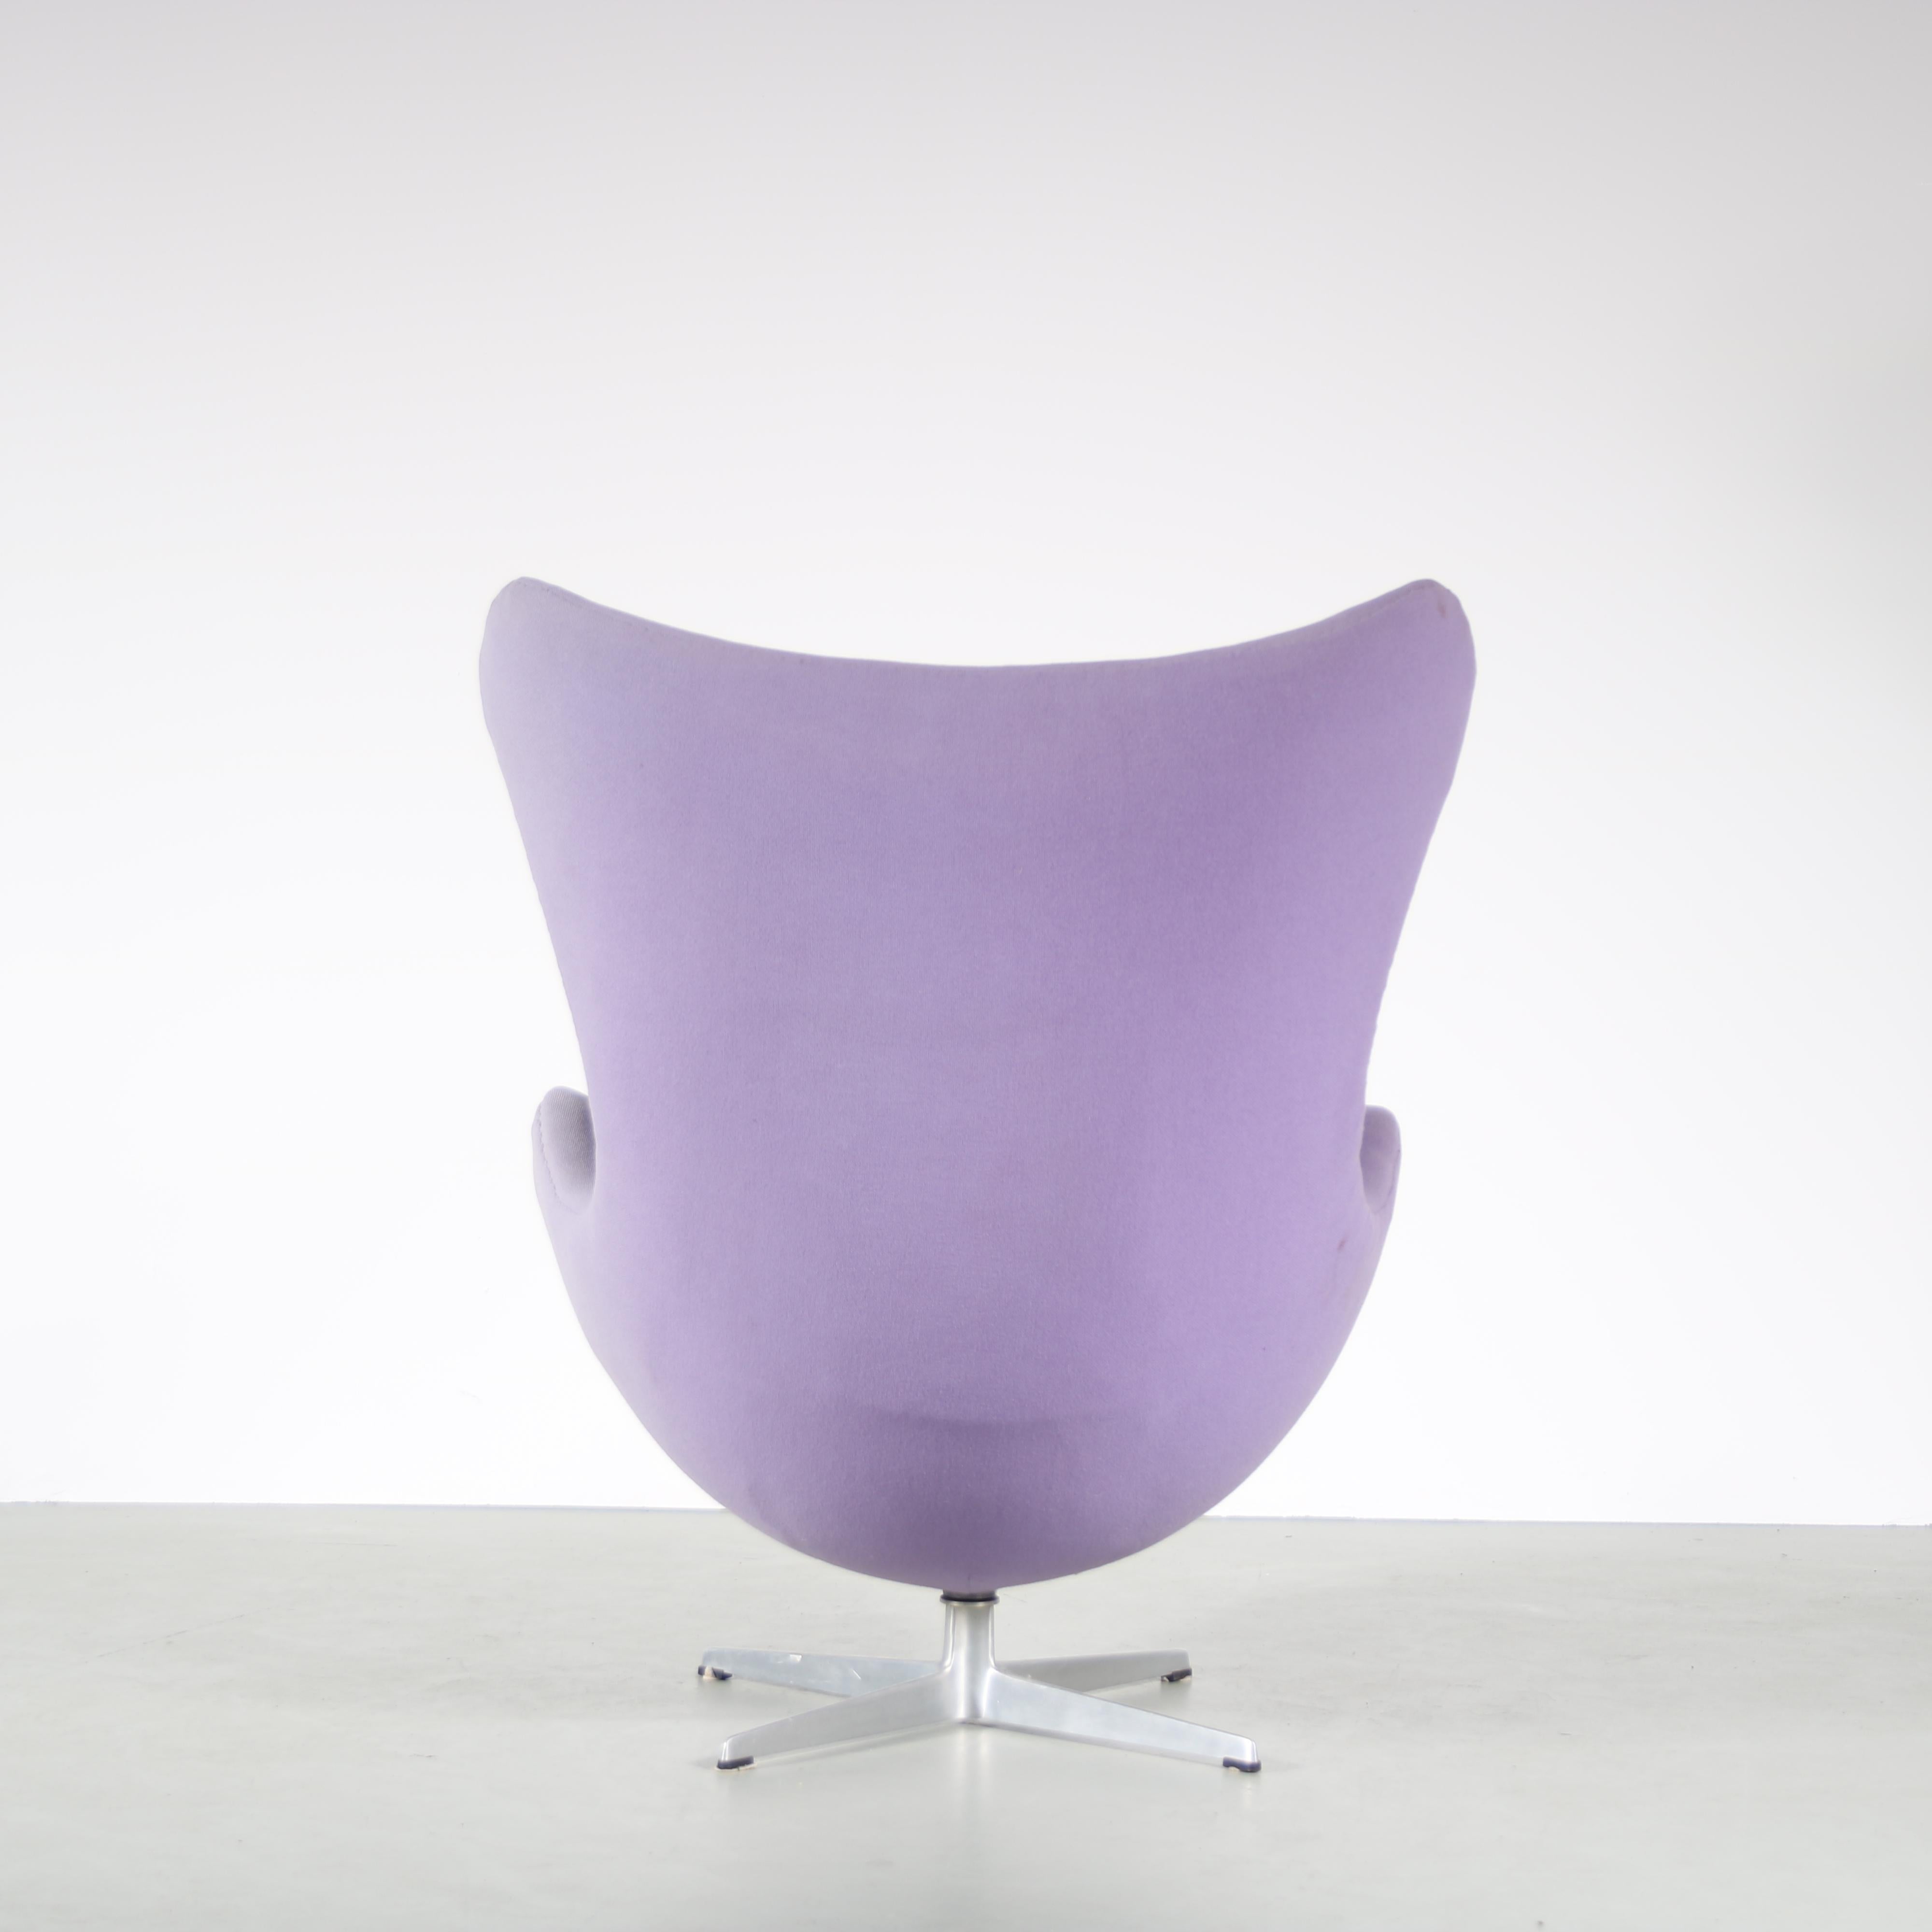 Metal “Egg” Chair by Arne Jacobsen for Fritz Hansen, Denmark 1960